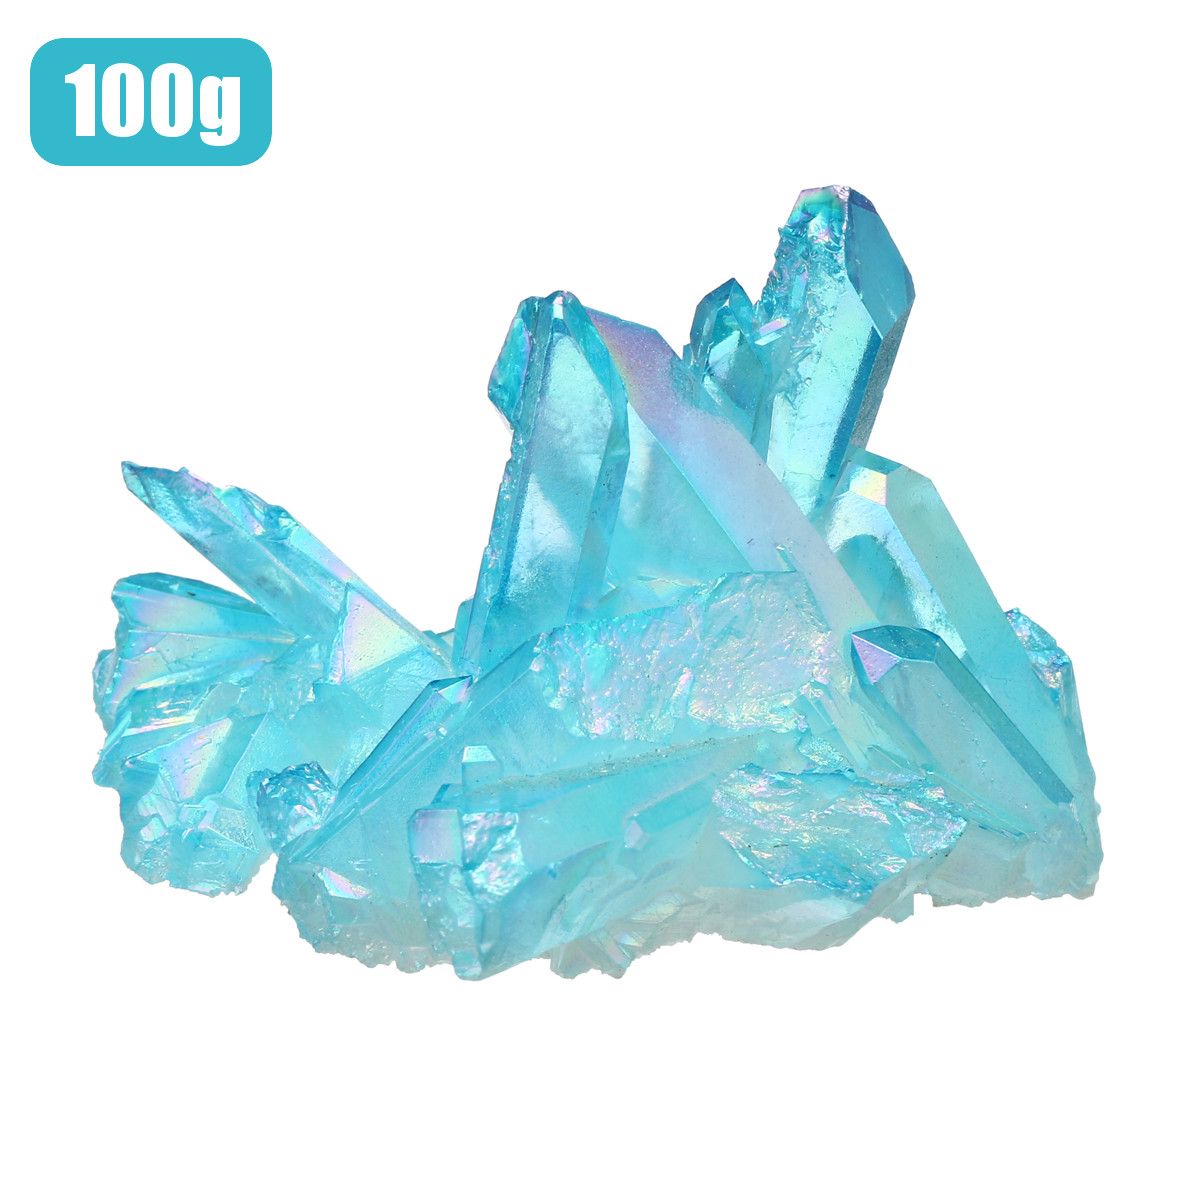 1Pcs-Royal-Blue-Natural-Crystals-Quartz-Cluster-Mineral-Specimen-Healing-Home-Decorations-1555834